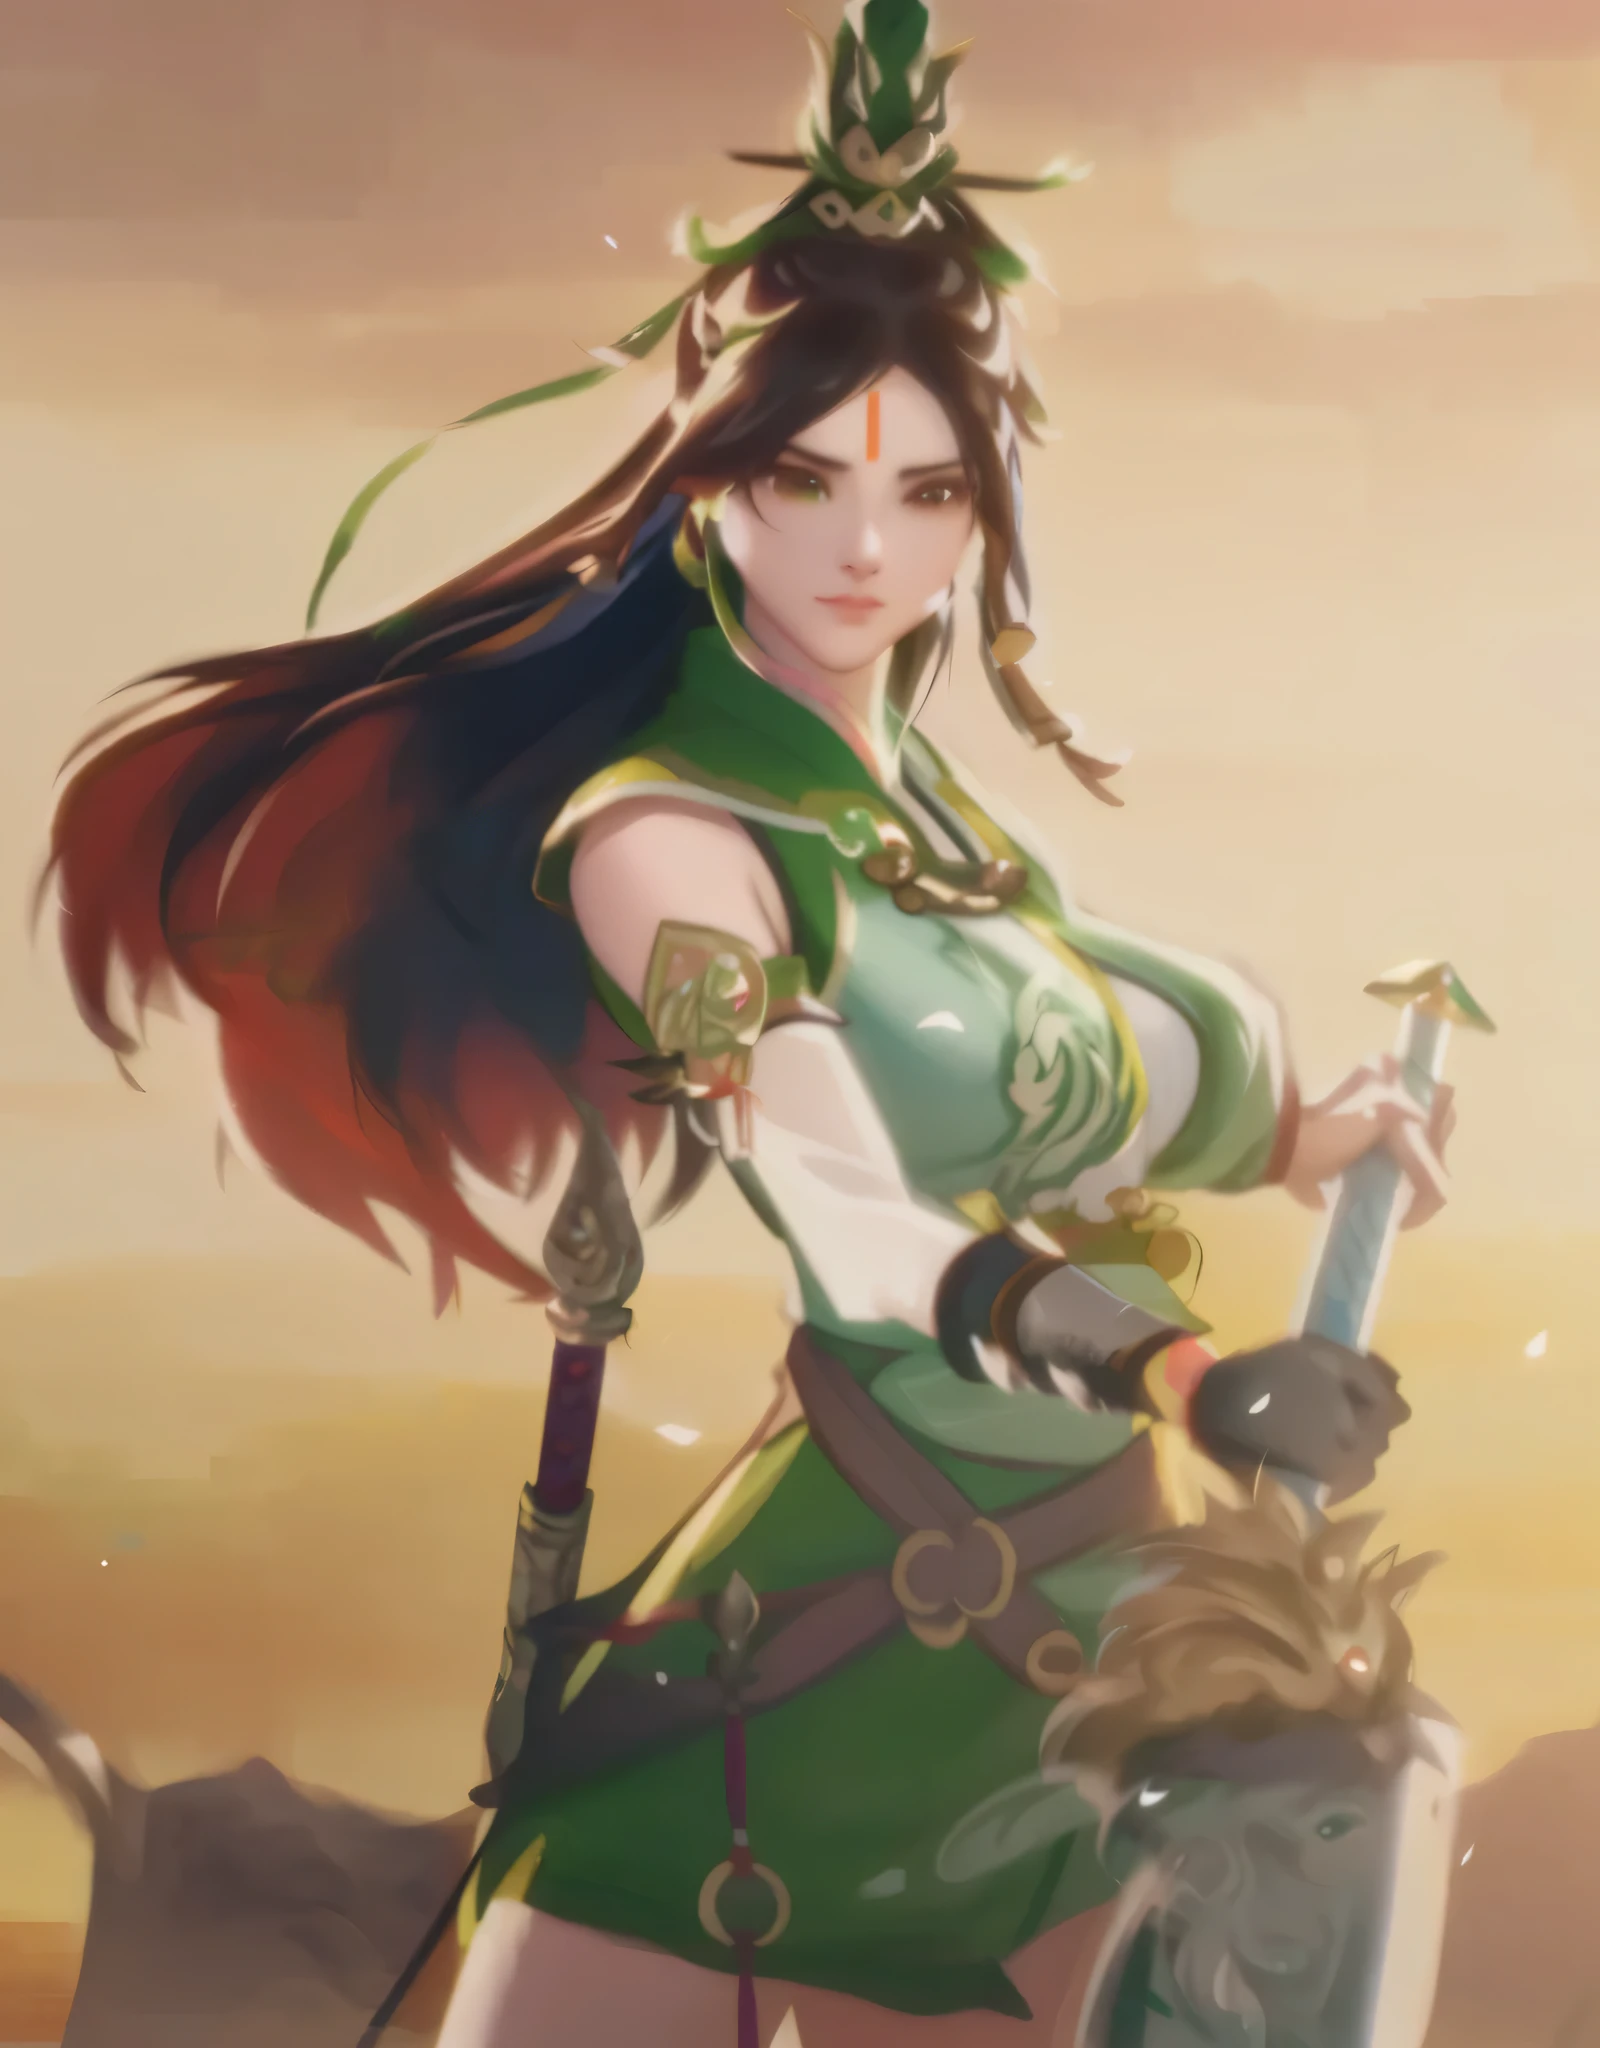 a man in green clothes、Close-up of woman holding sword, xianxia hero, bian lian, Ruan Jia and Artgerm, Inspired by Du Qiong, Inspired by Zhu Lian, Artgerm and Ruan Jia, guan yu, Inspired by Lan Ying, inspired by Wu Zuoren, Inspired by Li Tang, full-body wuxia